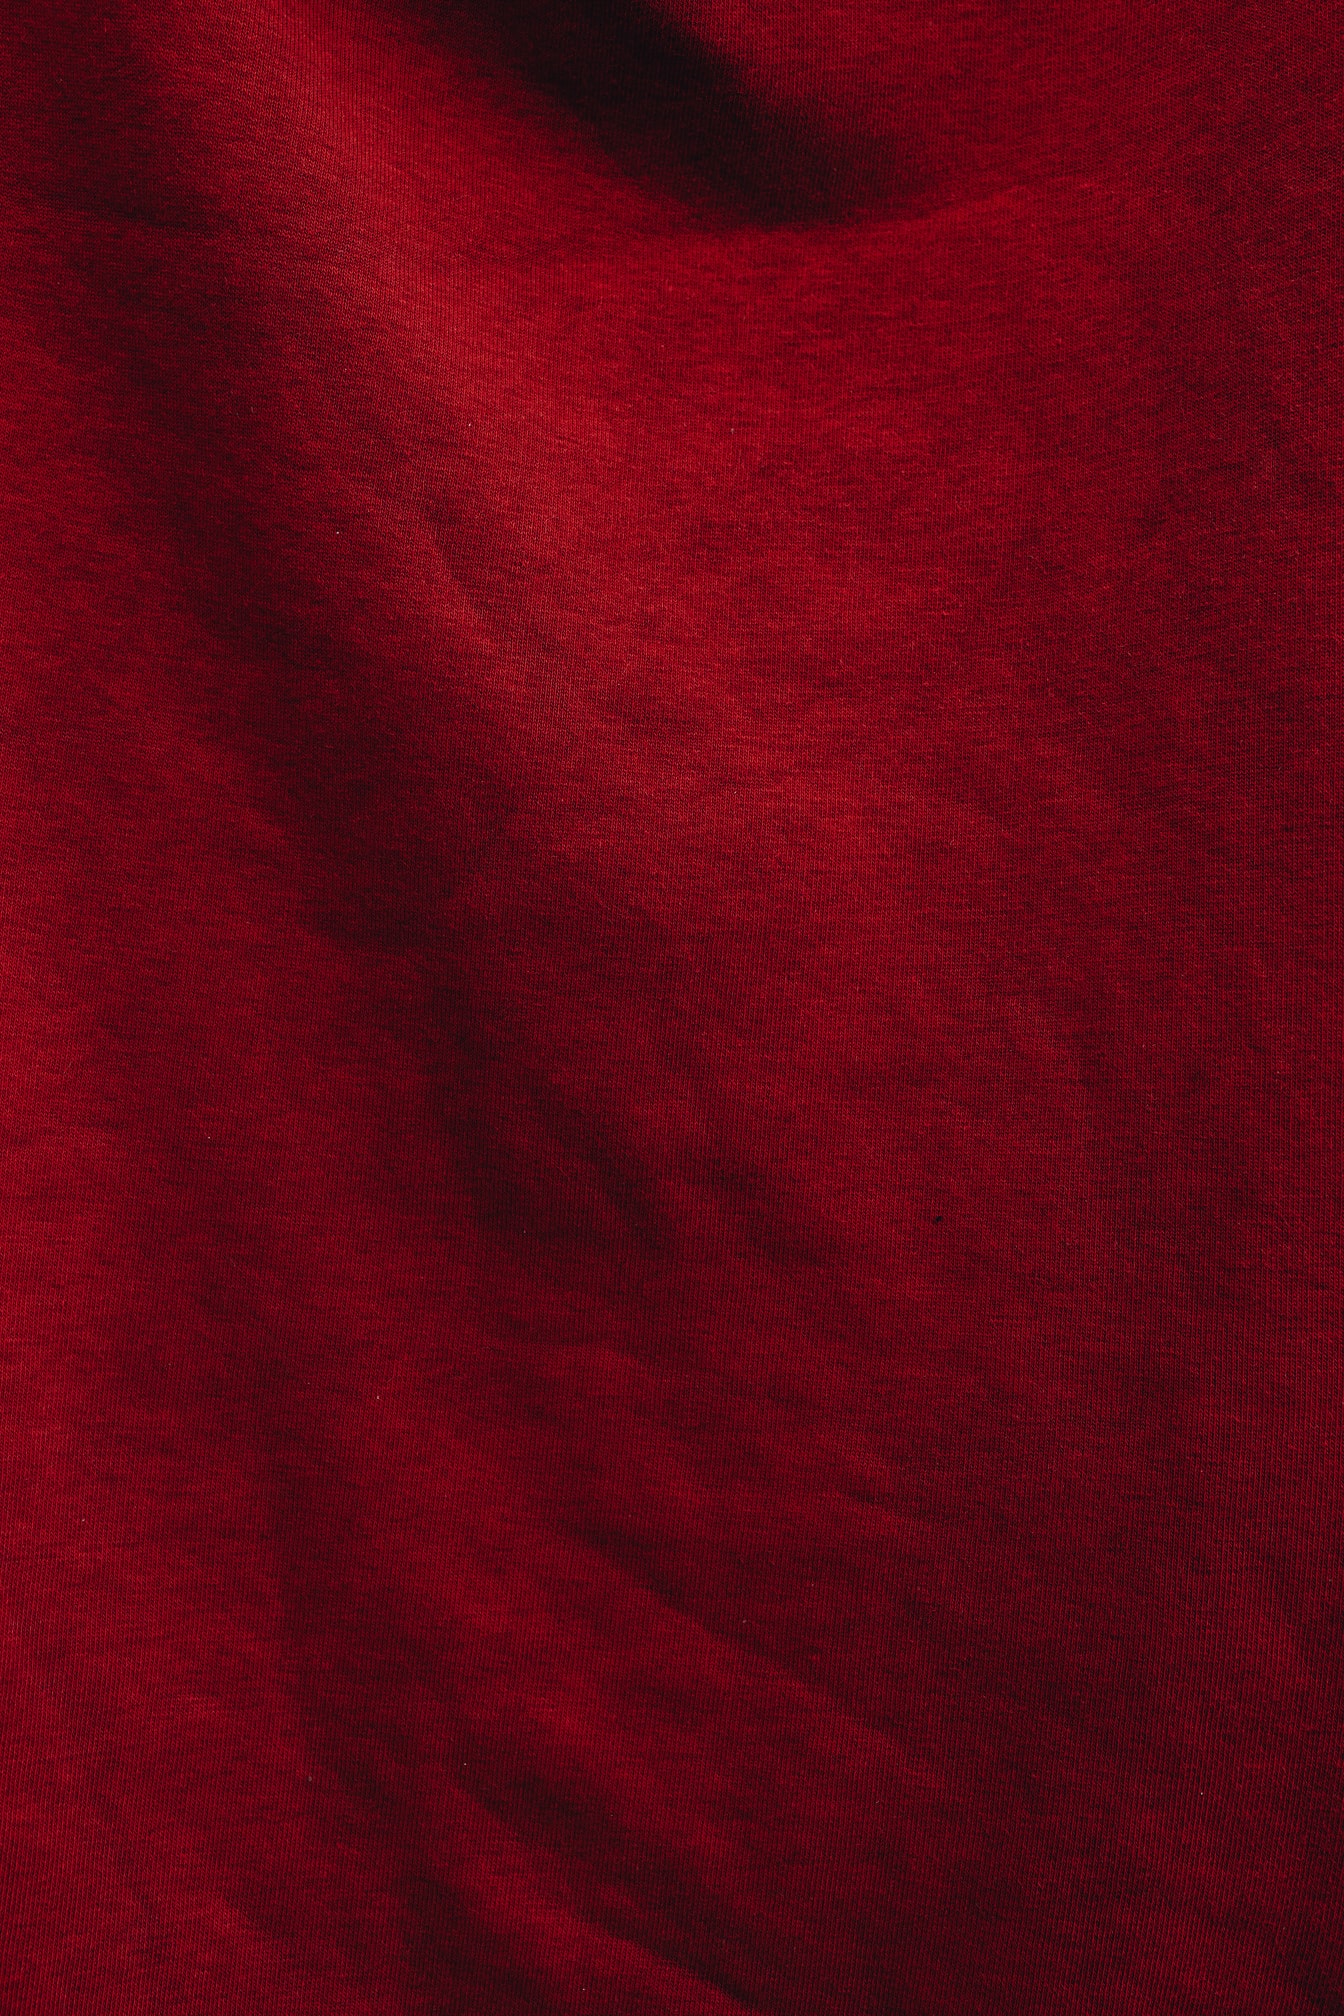 阴影纹理的深红色棉织物